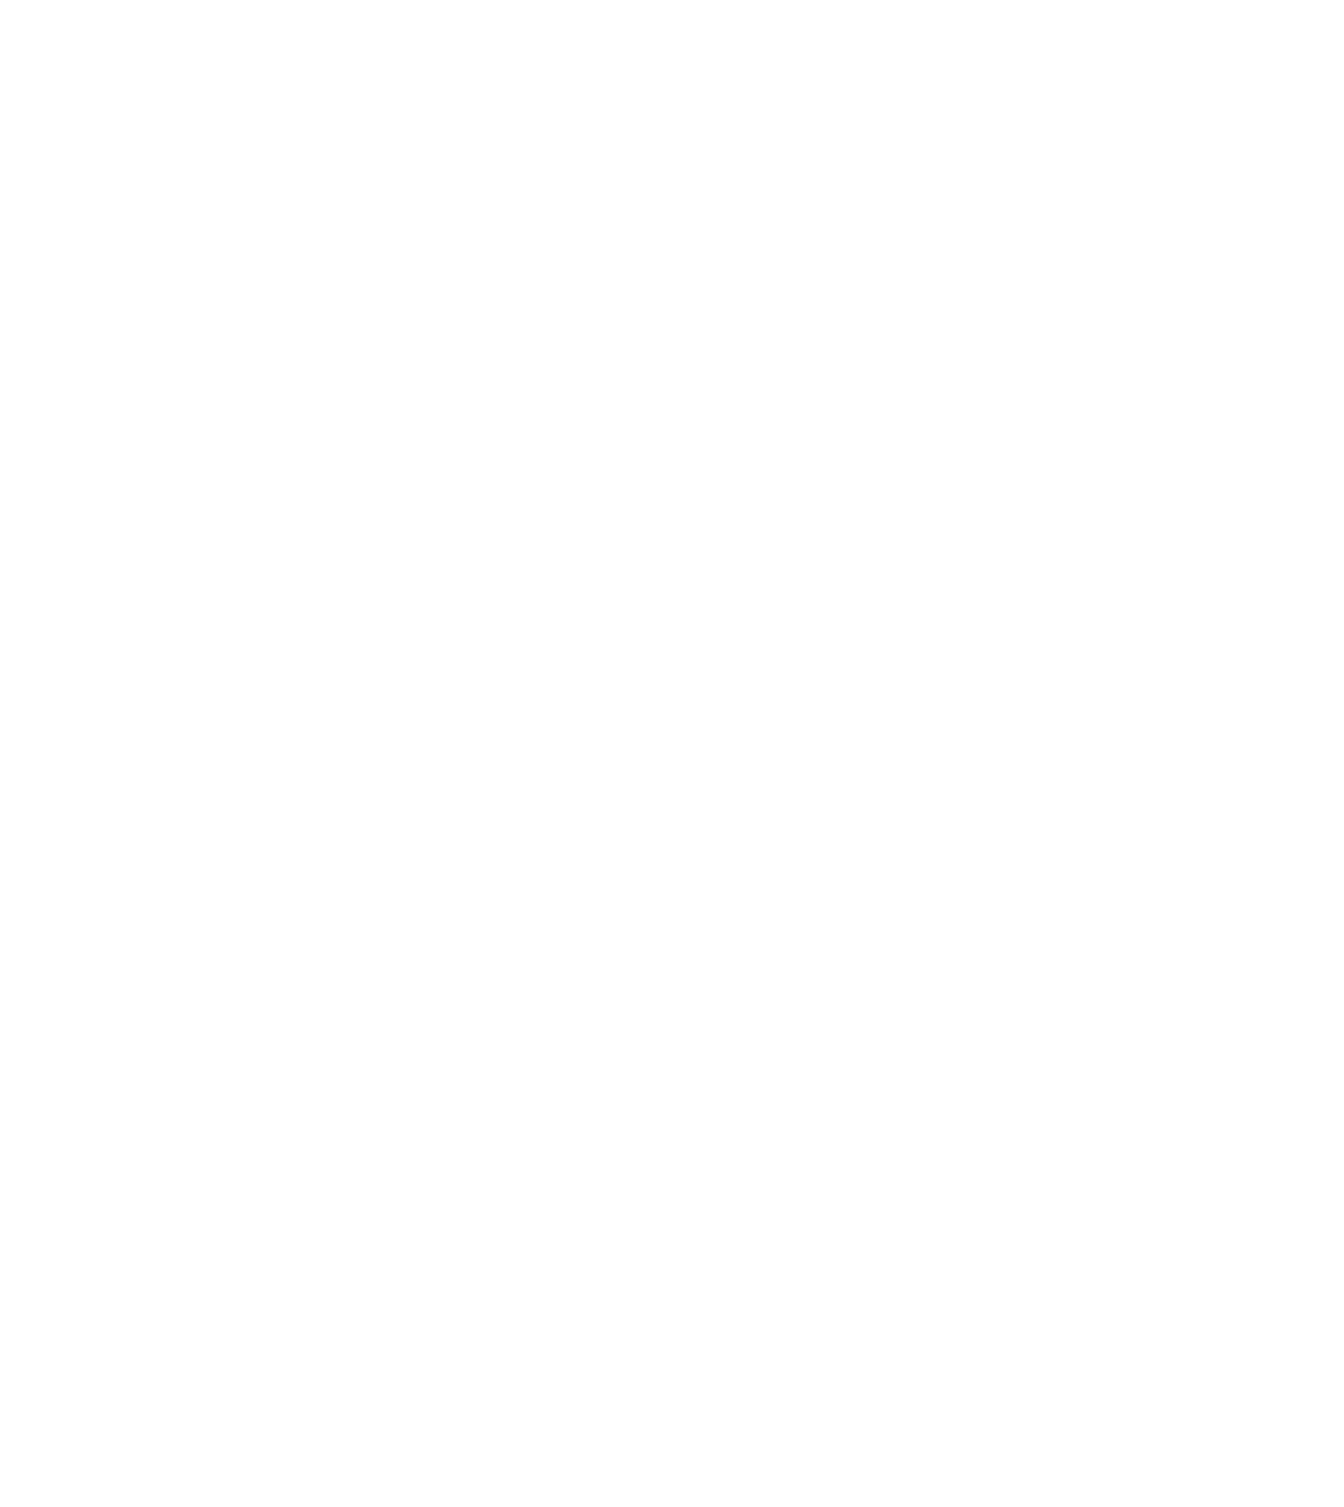 Celcomdigi logo pour fonds sombres (PNG transparent)